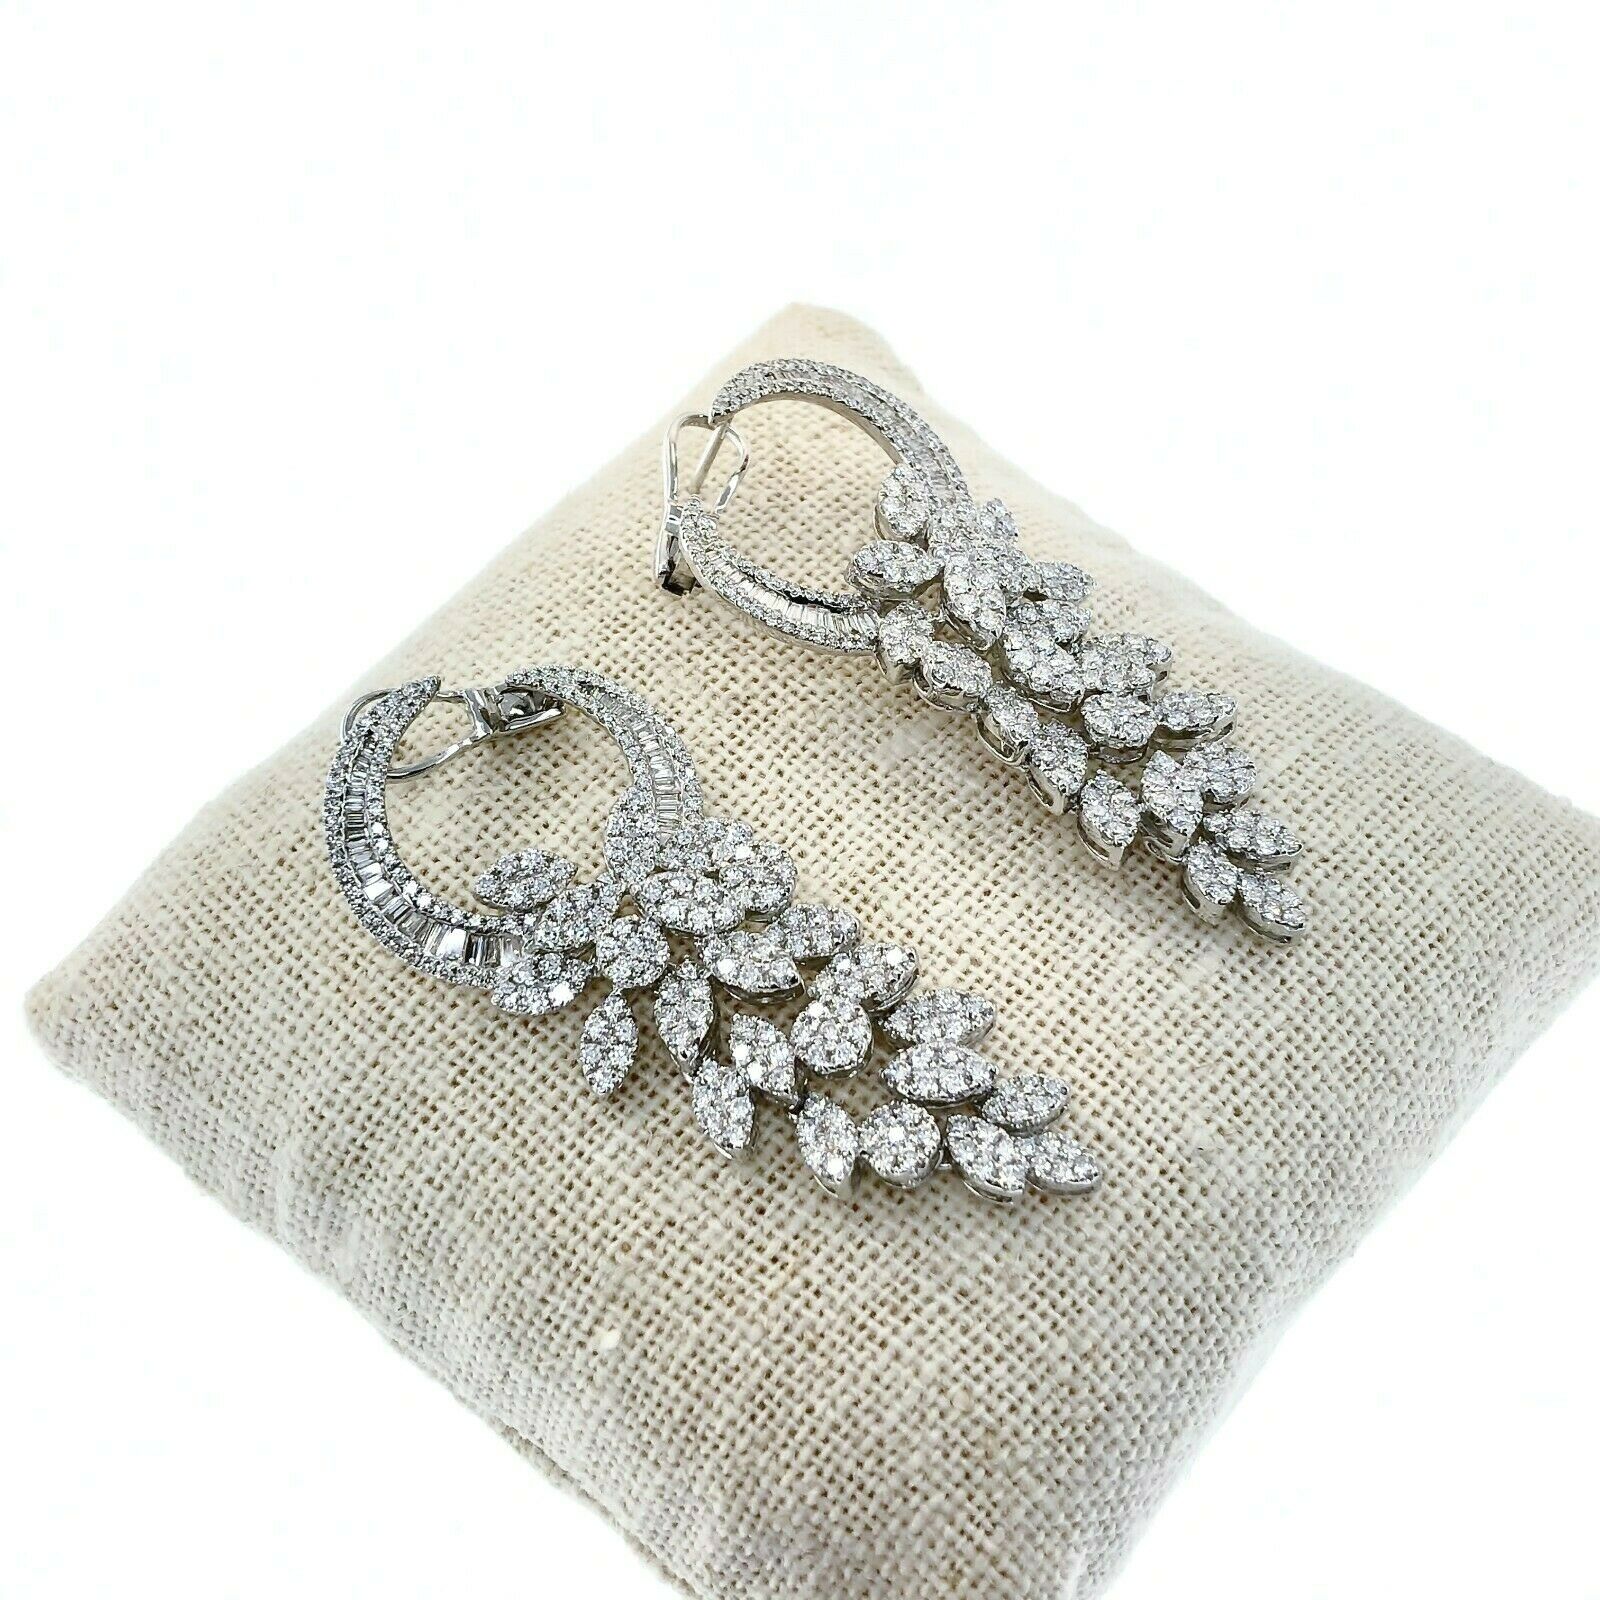 5.81 Carats t.w. Diamond Chandelier Dangle Earrings 18K Gold 2.10 Inch Drop